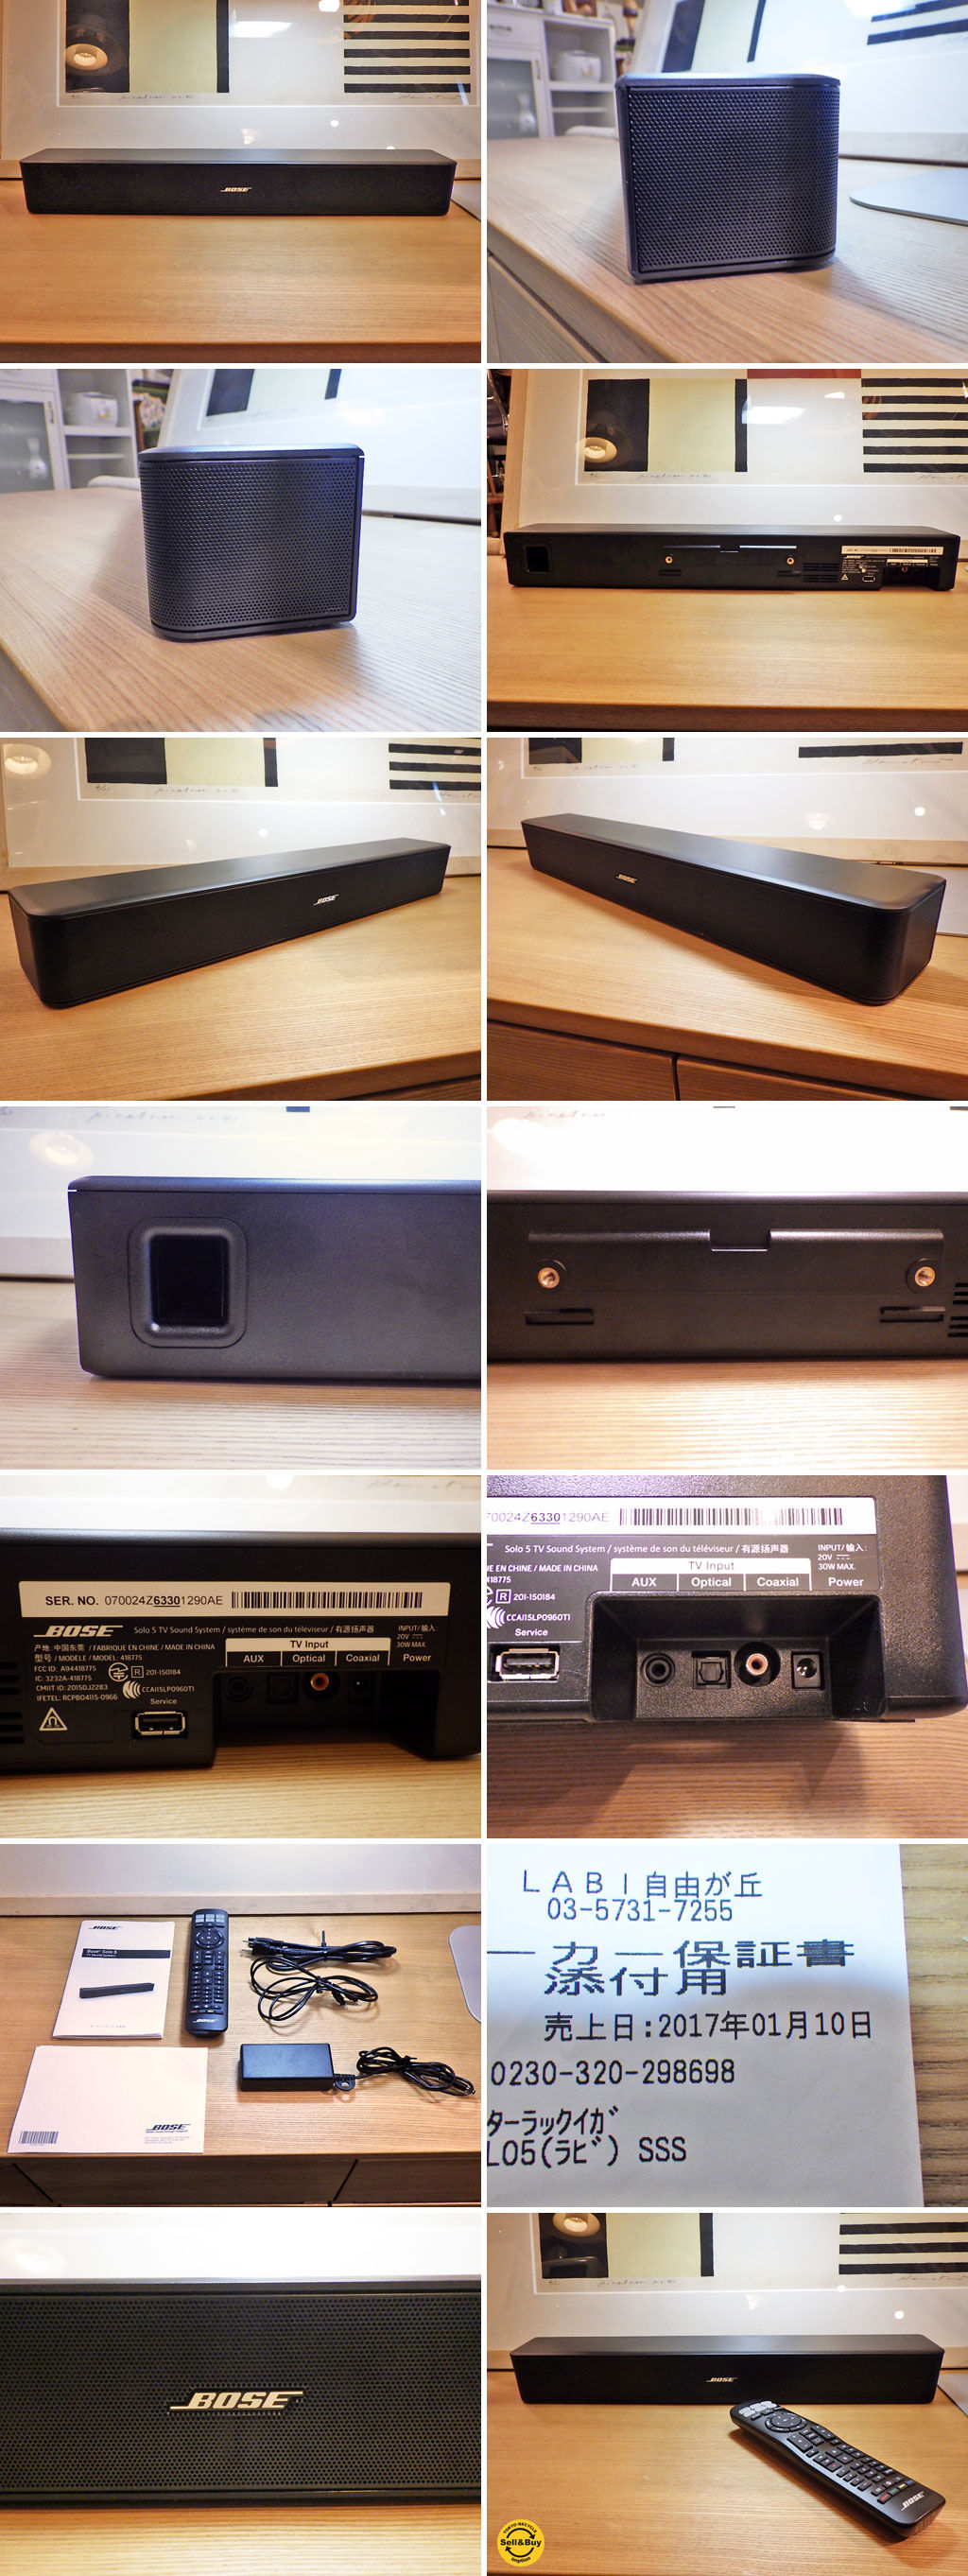 17年1月購入 保証約1年付 Bose ボーズ Solo 5 TV sound system